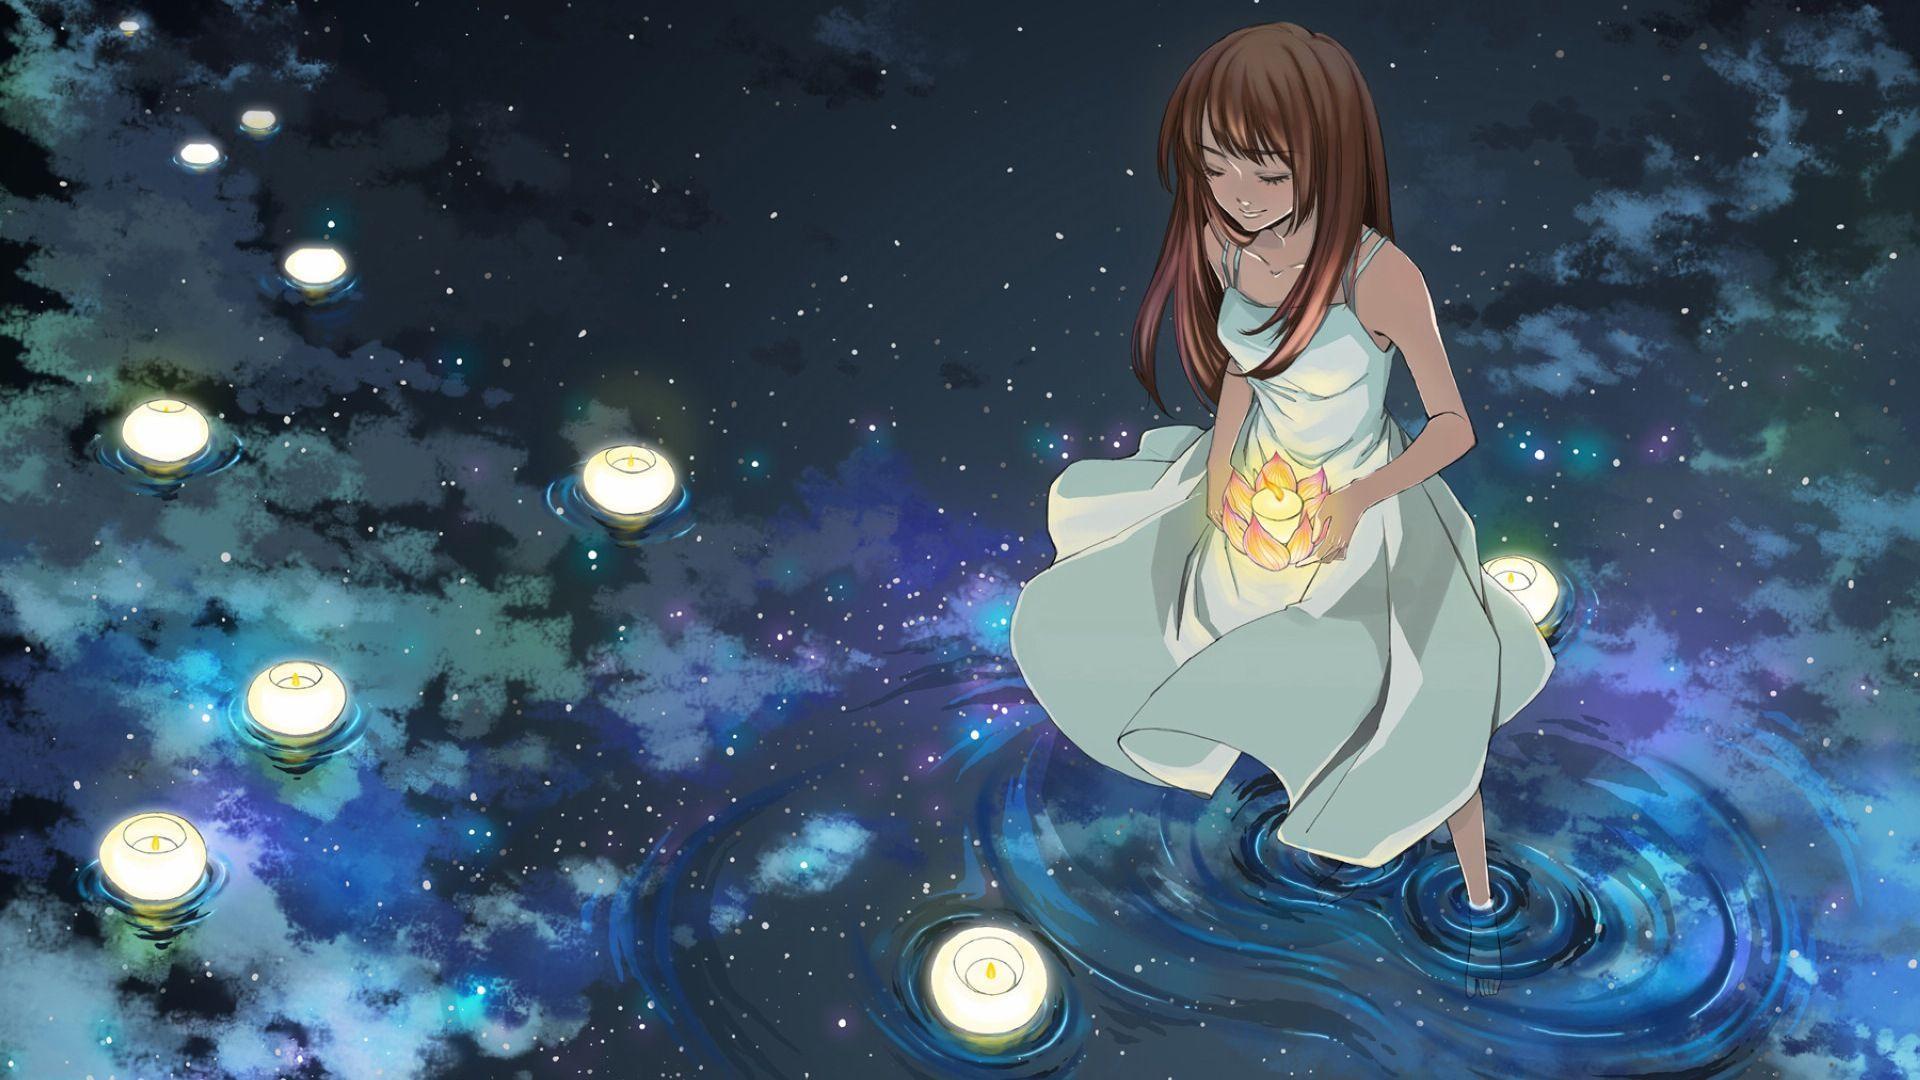 Hình ảnh Anime một cô gái đang cầu nguyện cho điều ước tốt đẹp về tình yêu của nàng